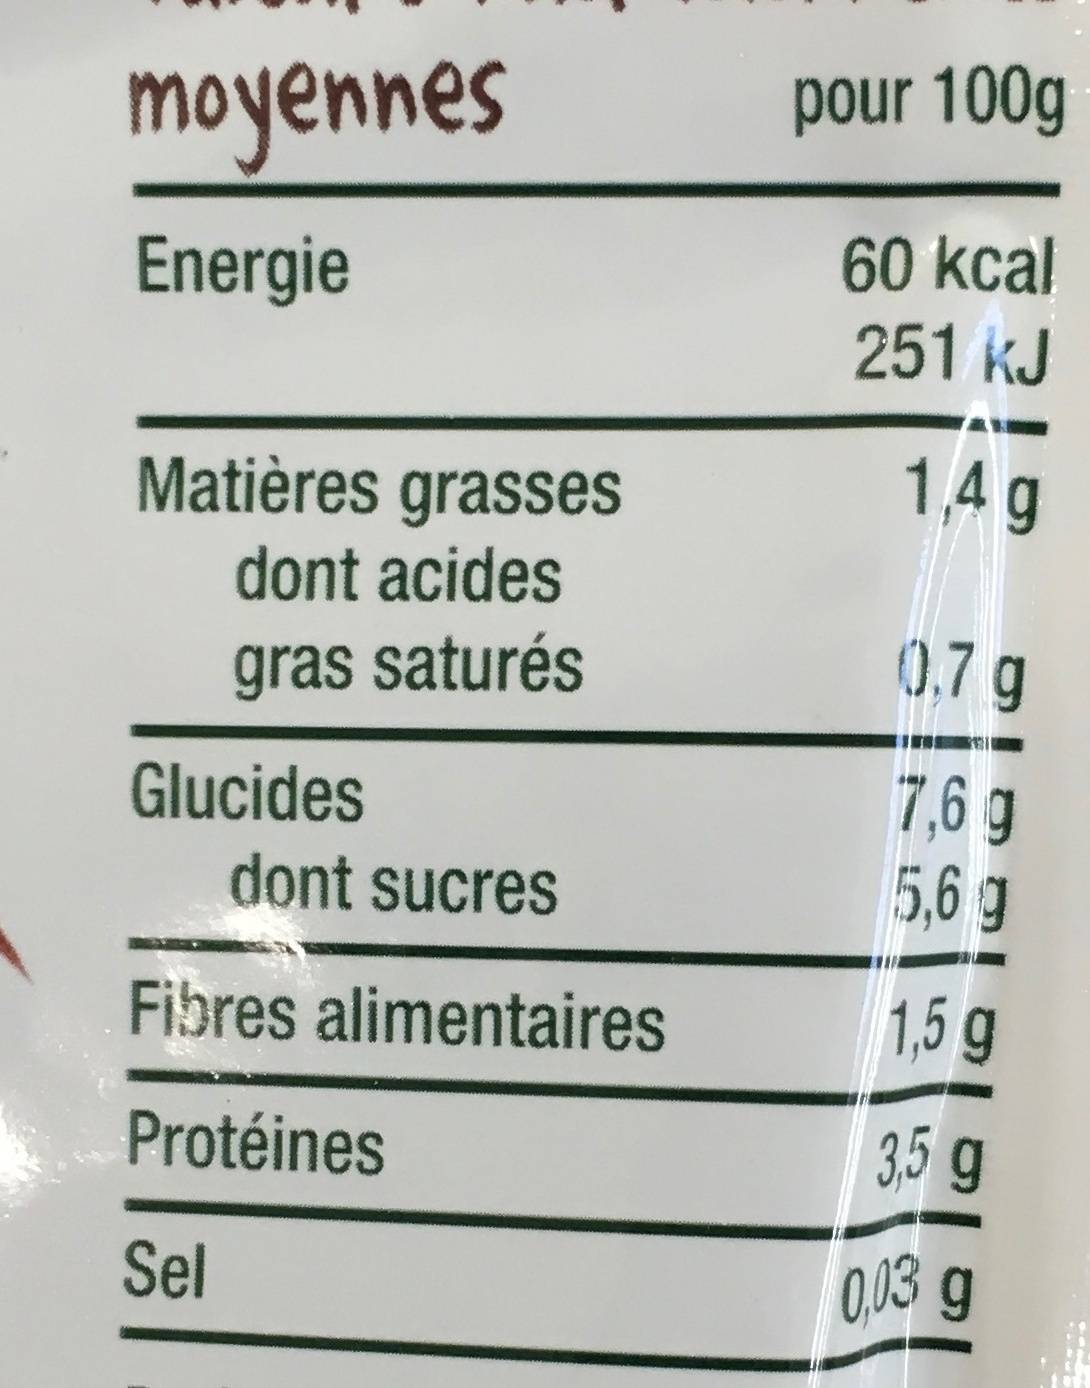 Parmentier de boeuf aux topinambours-Good Gout-220g - Nutrition facts - fr